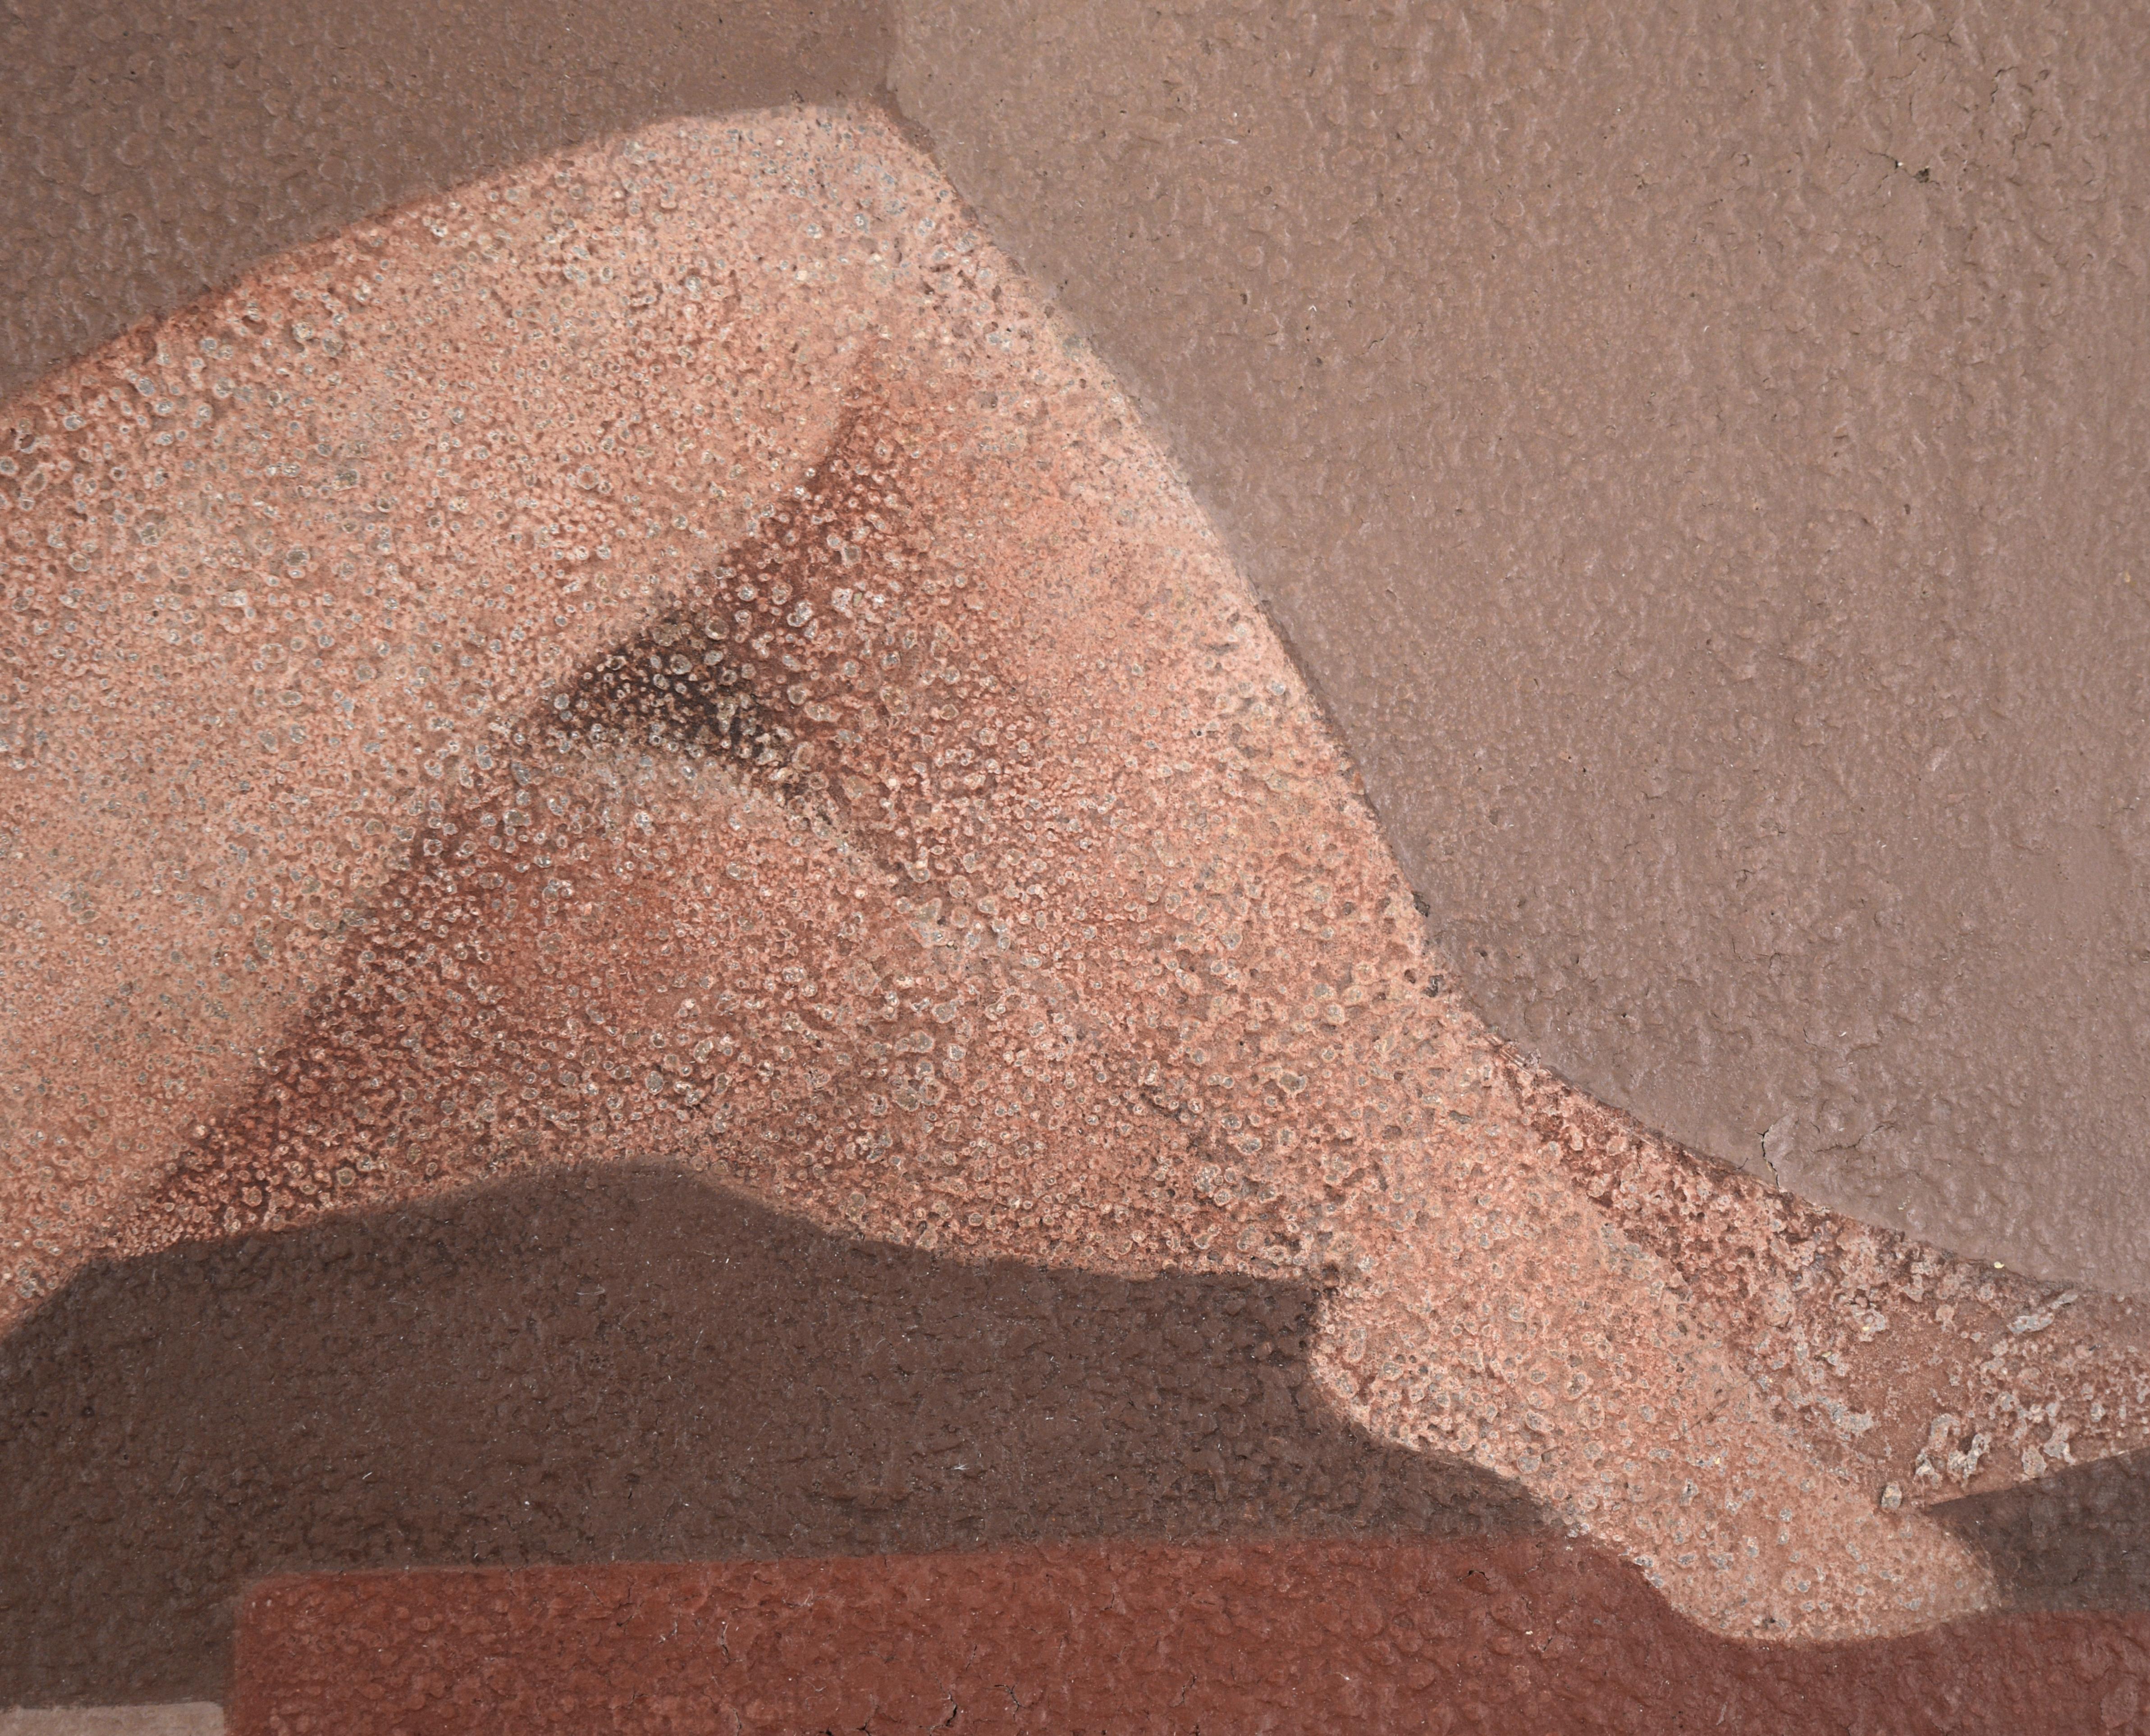 Modern Reclining Nude Female Figure  - Brown Nude Painting by Diaz Cruz